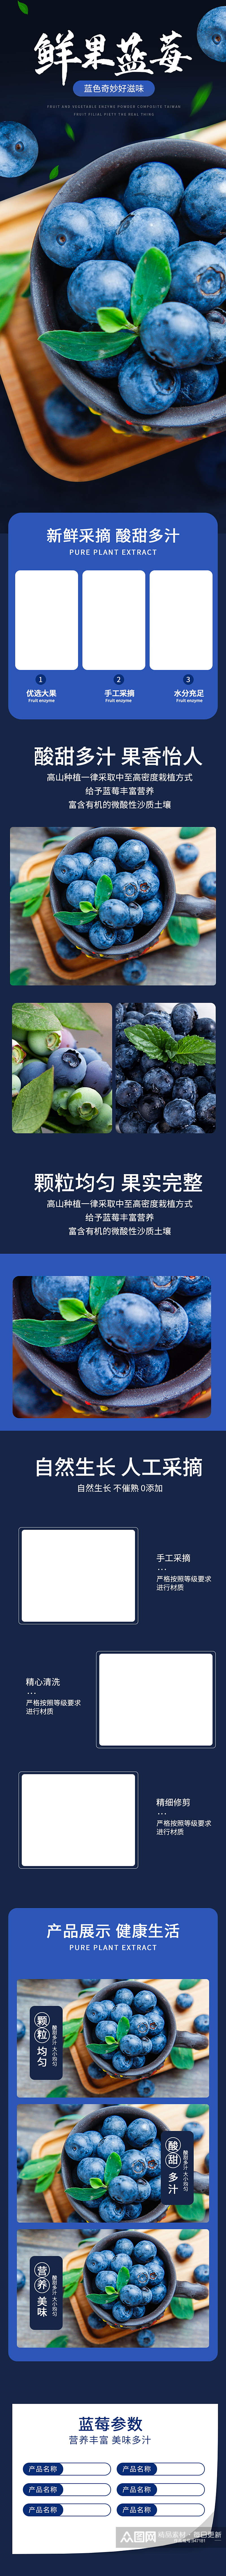 生鲜水果蓝莓详情页素材